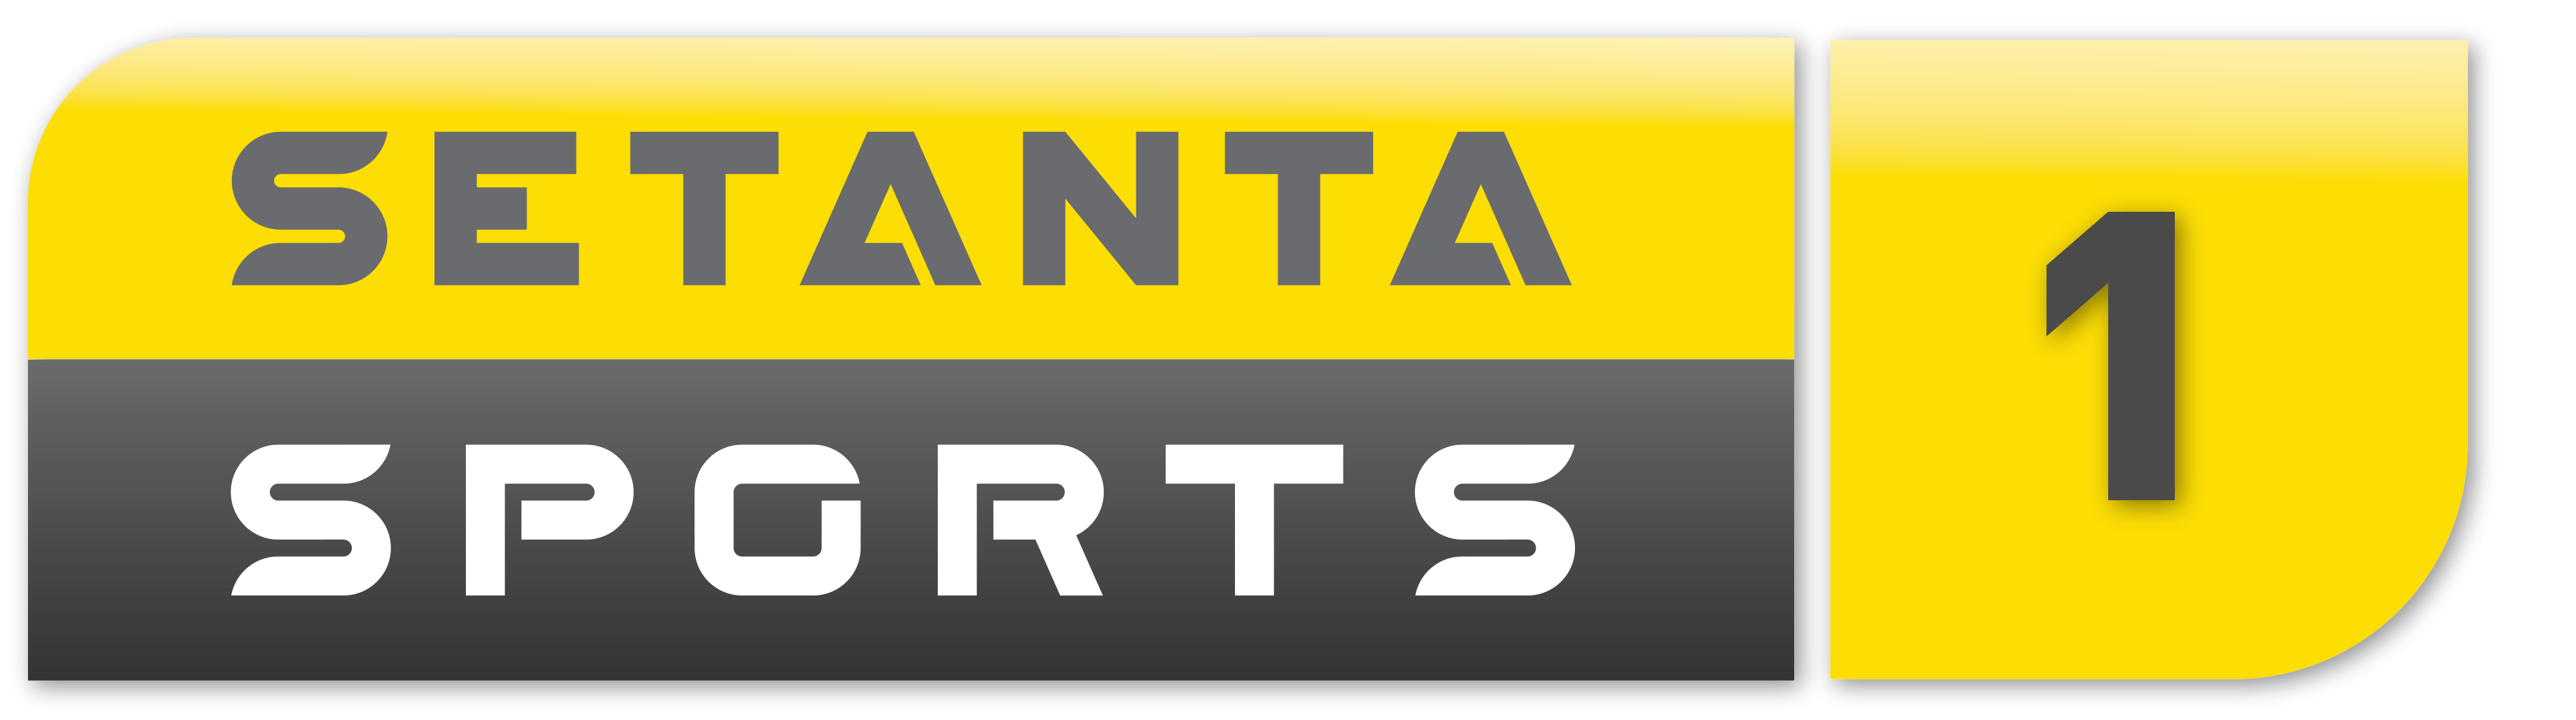 Setanta Sports 1 Eurasia